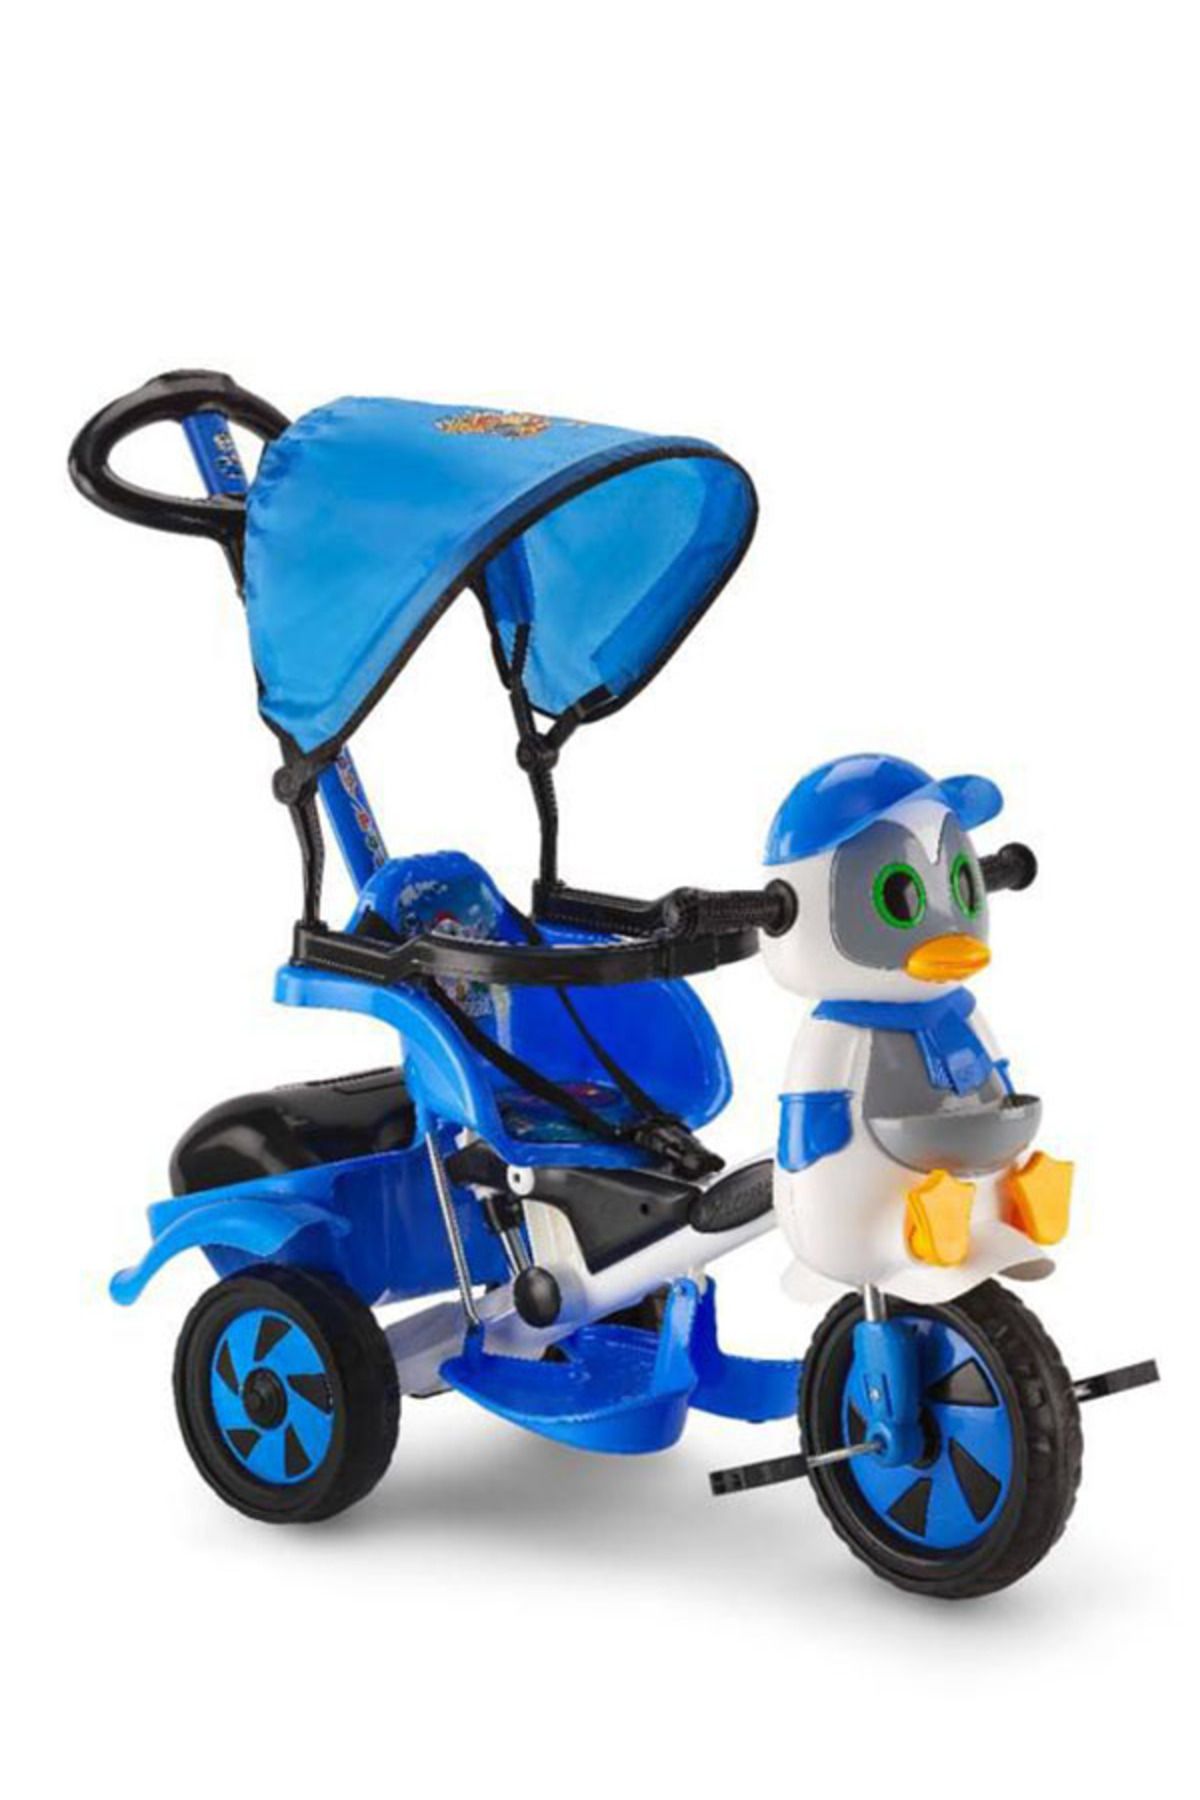 Dilaver Baby Poufi Penguen Ebeveyn Kontrollü Üç Tekerlekli Çocuk Bisikleti - Mavi